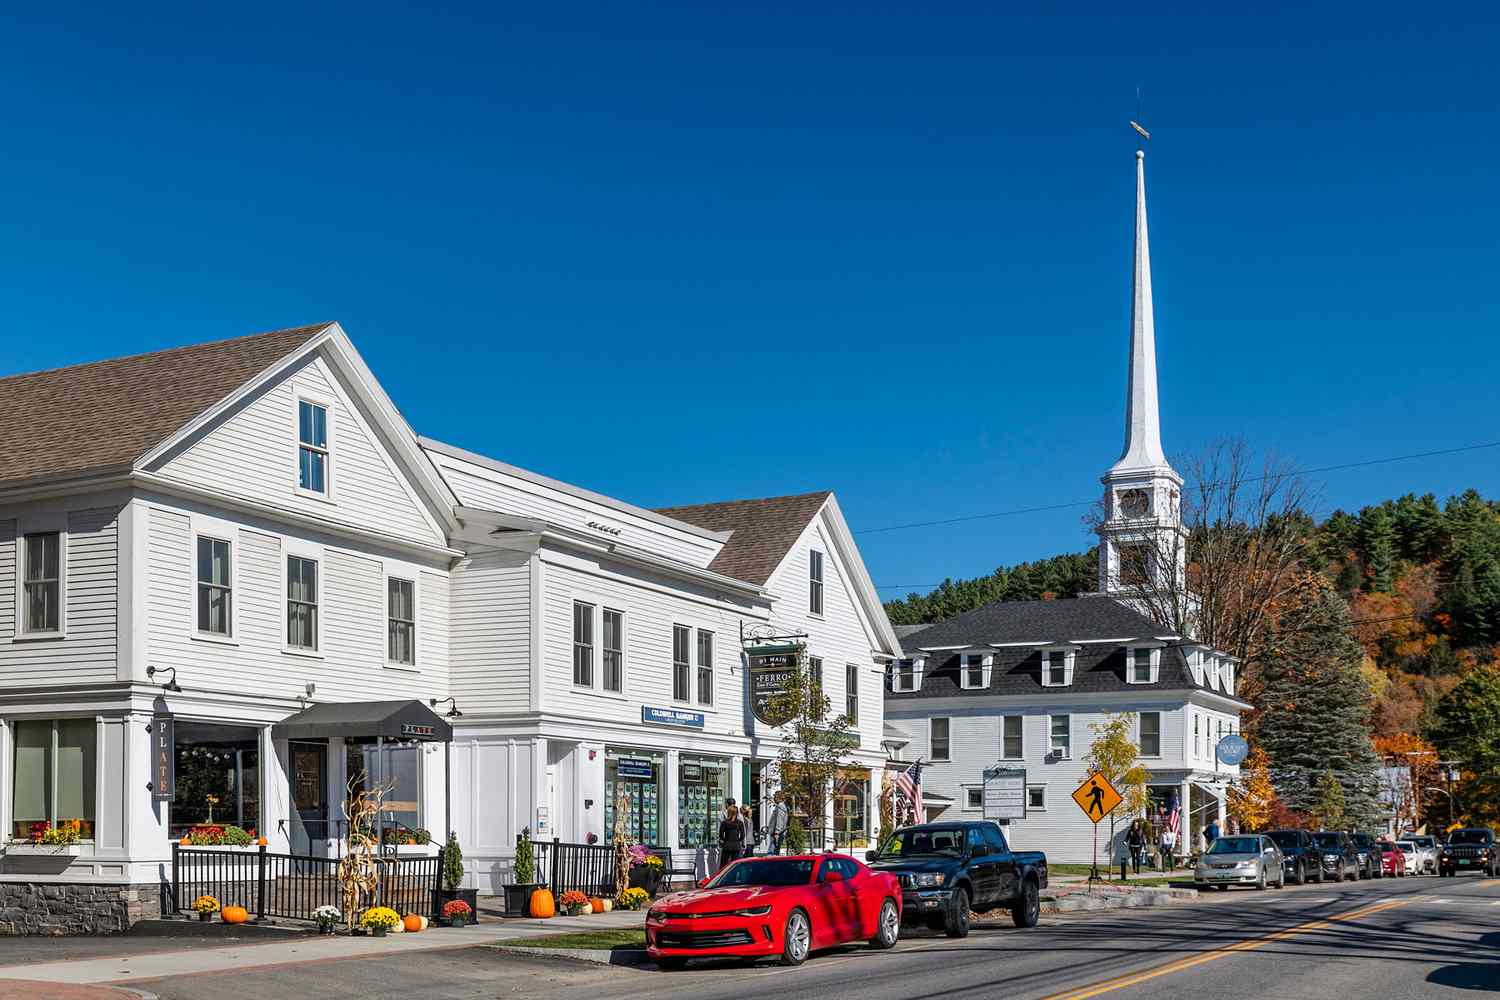 Le charmant village de Stowe dans le Vermont au cours de l'automne.